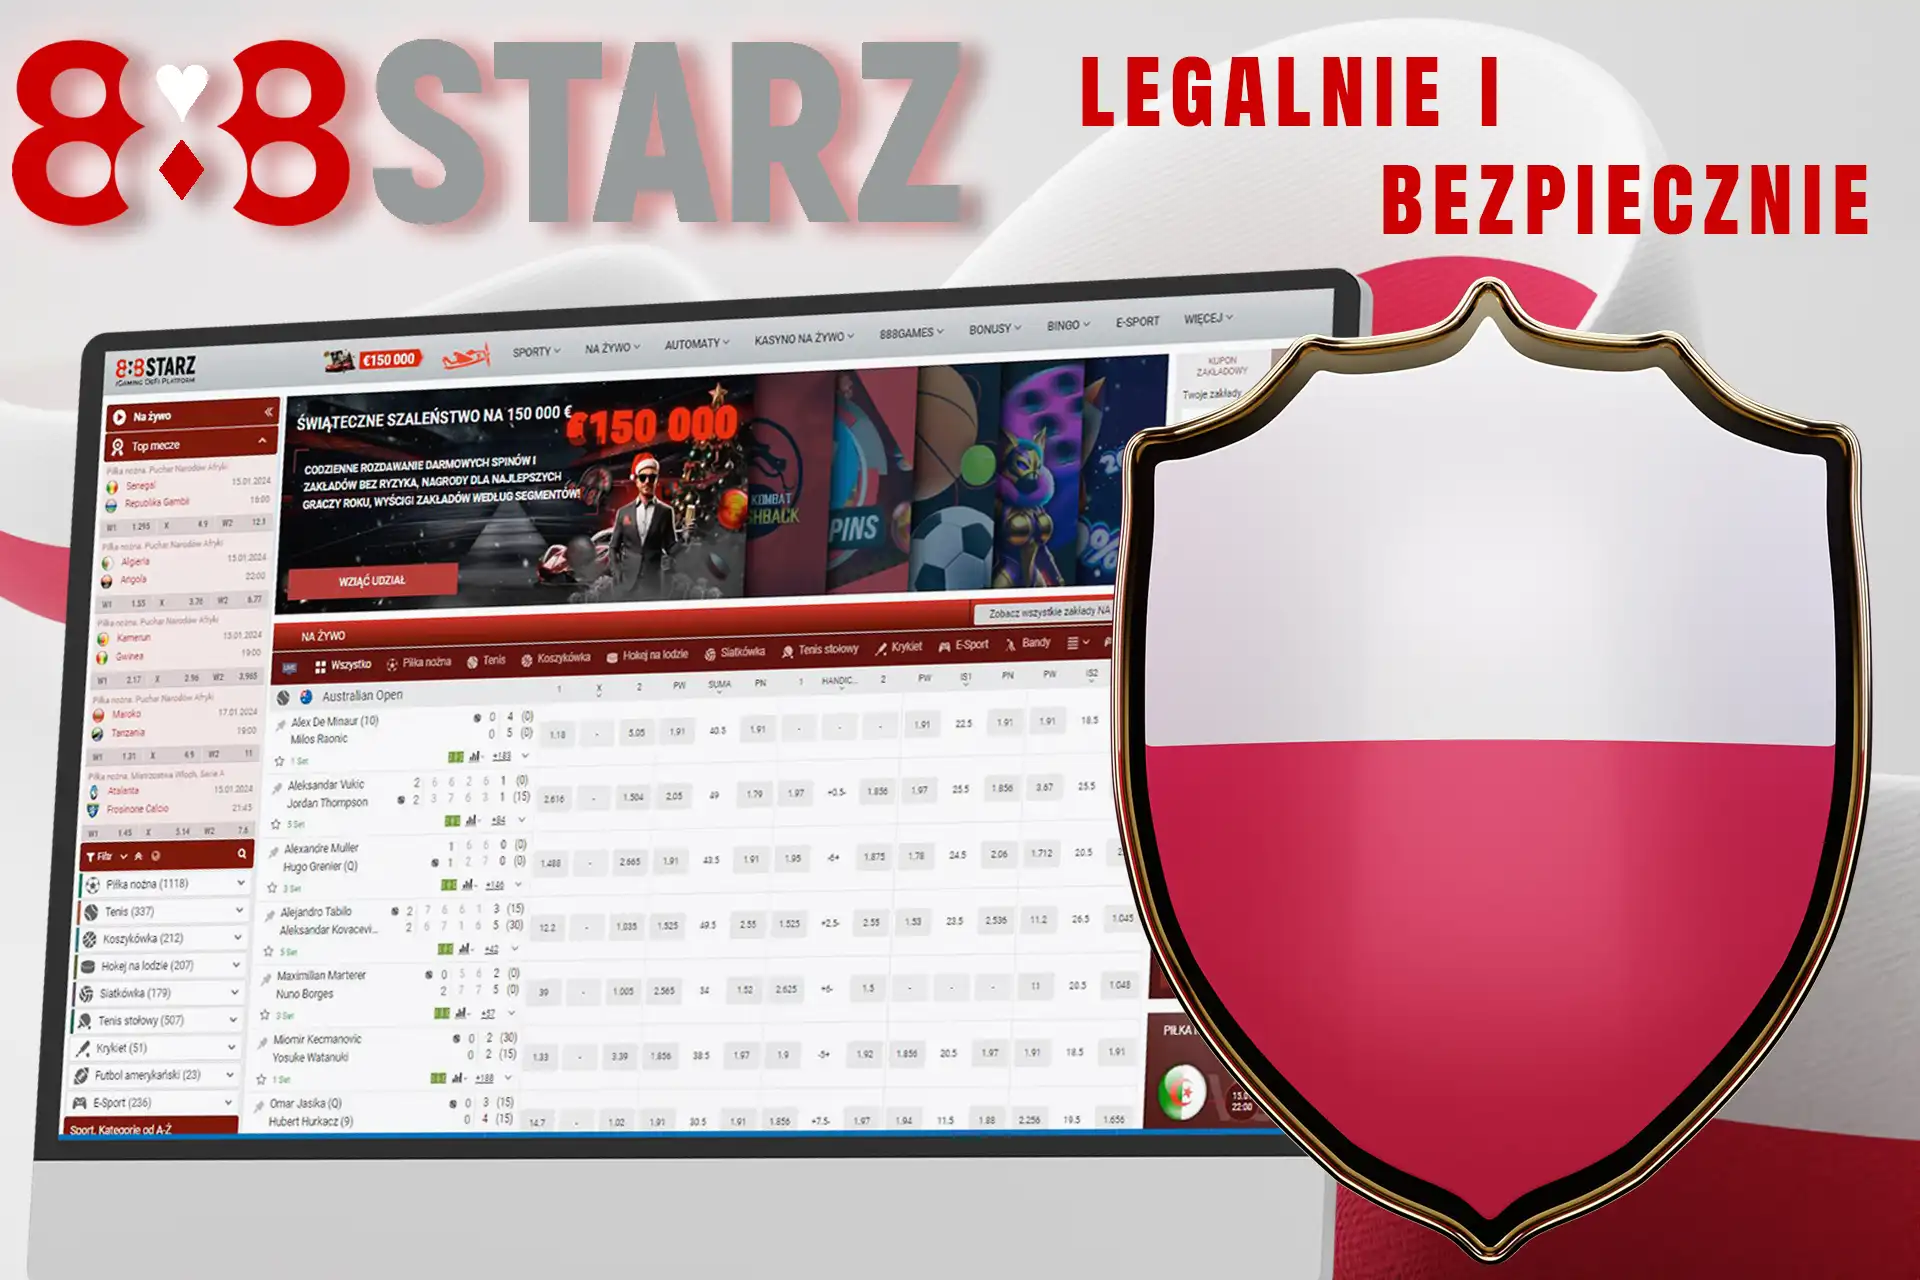 888Starz to legalne kasyno w Polsce